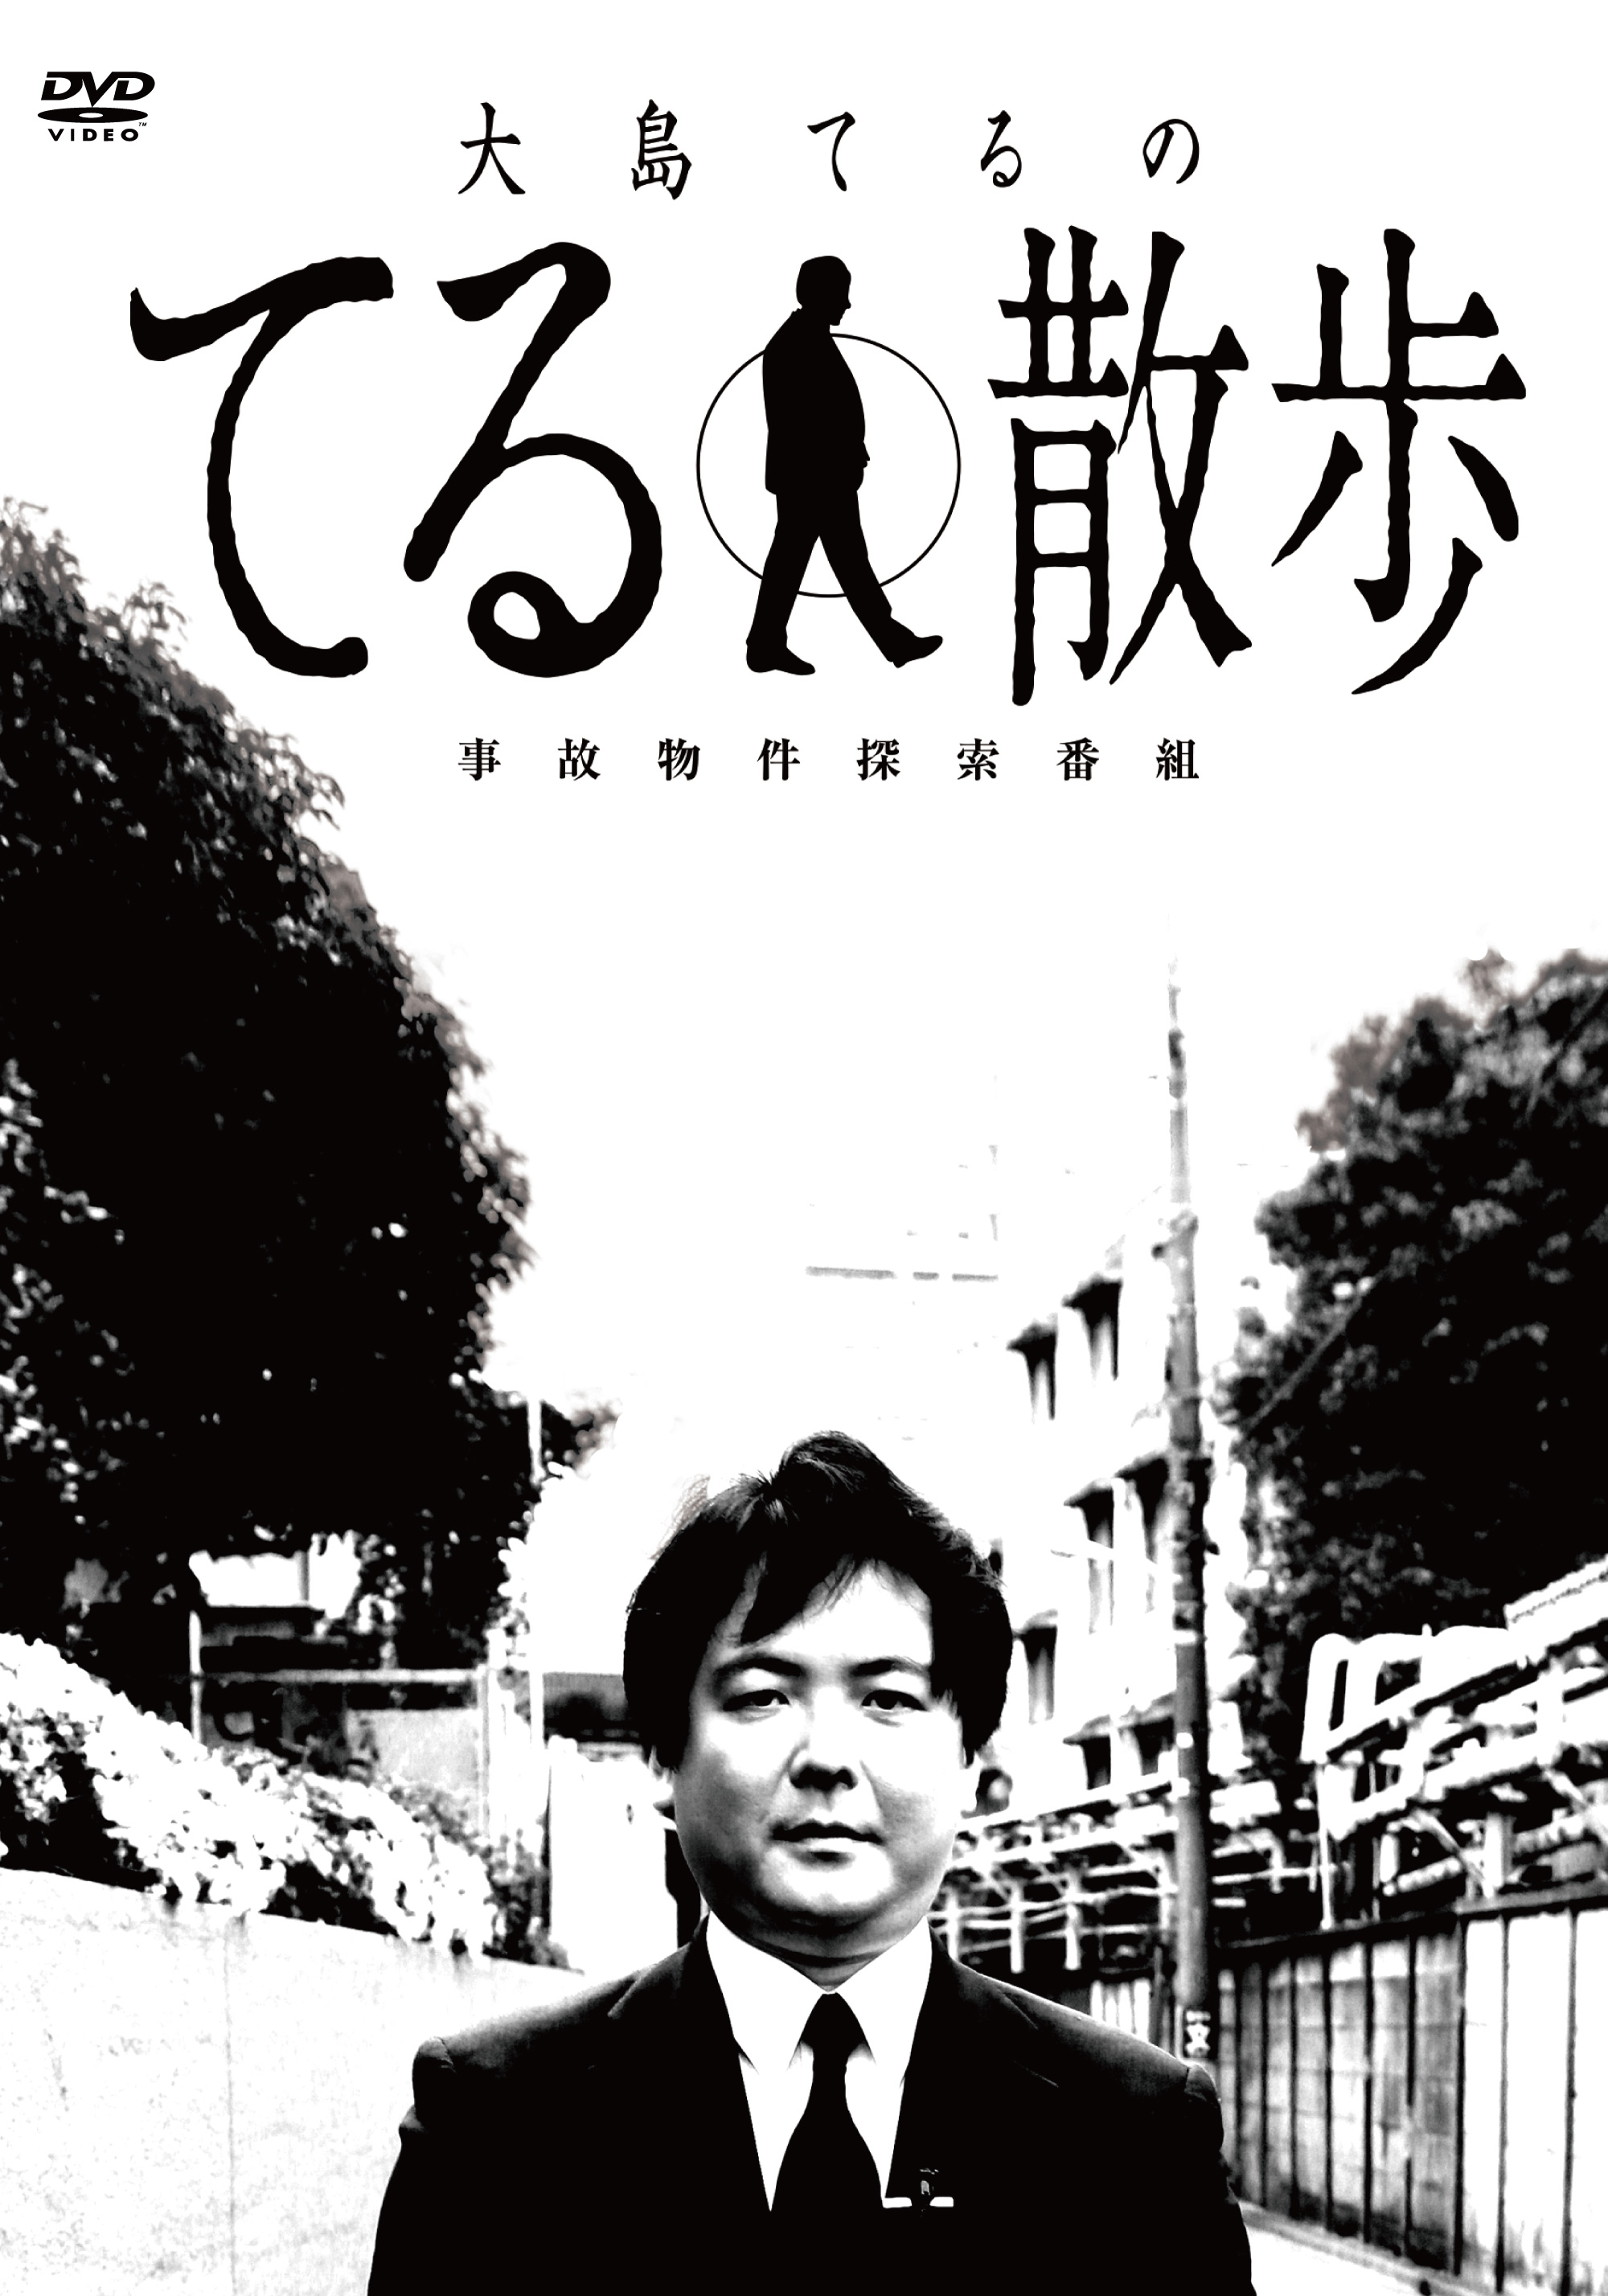 【DVD】事故物件探索番組「大島てるのてる散歩」 2019年4月23日(火) 発売